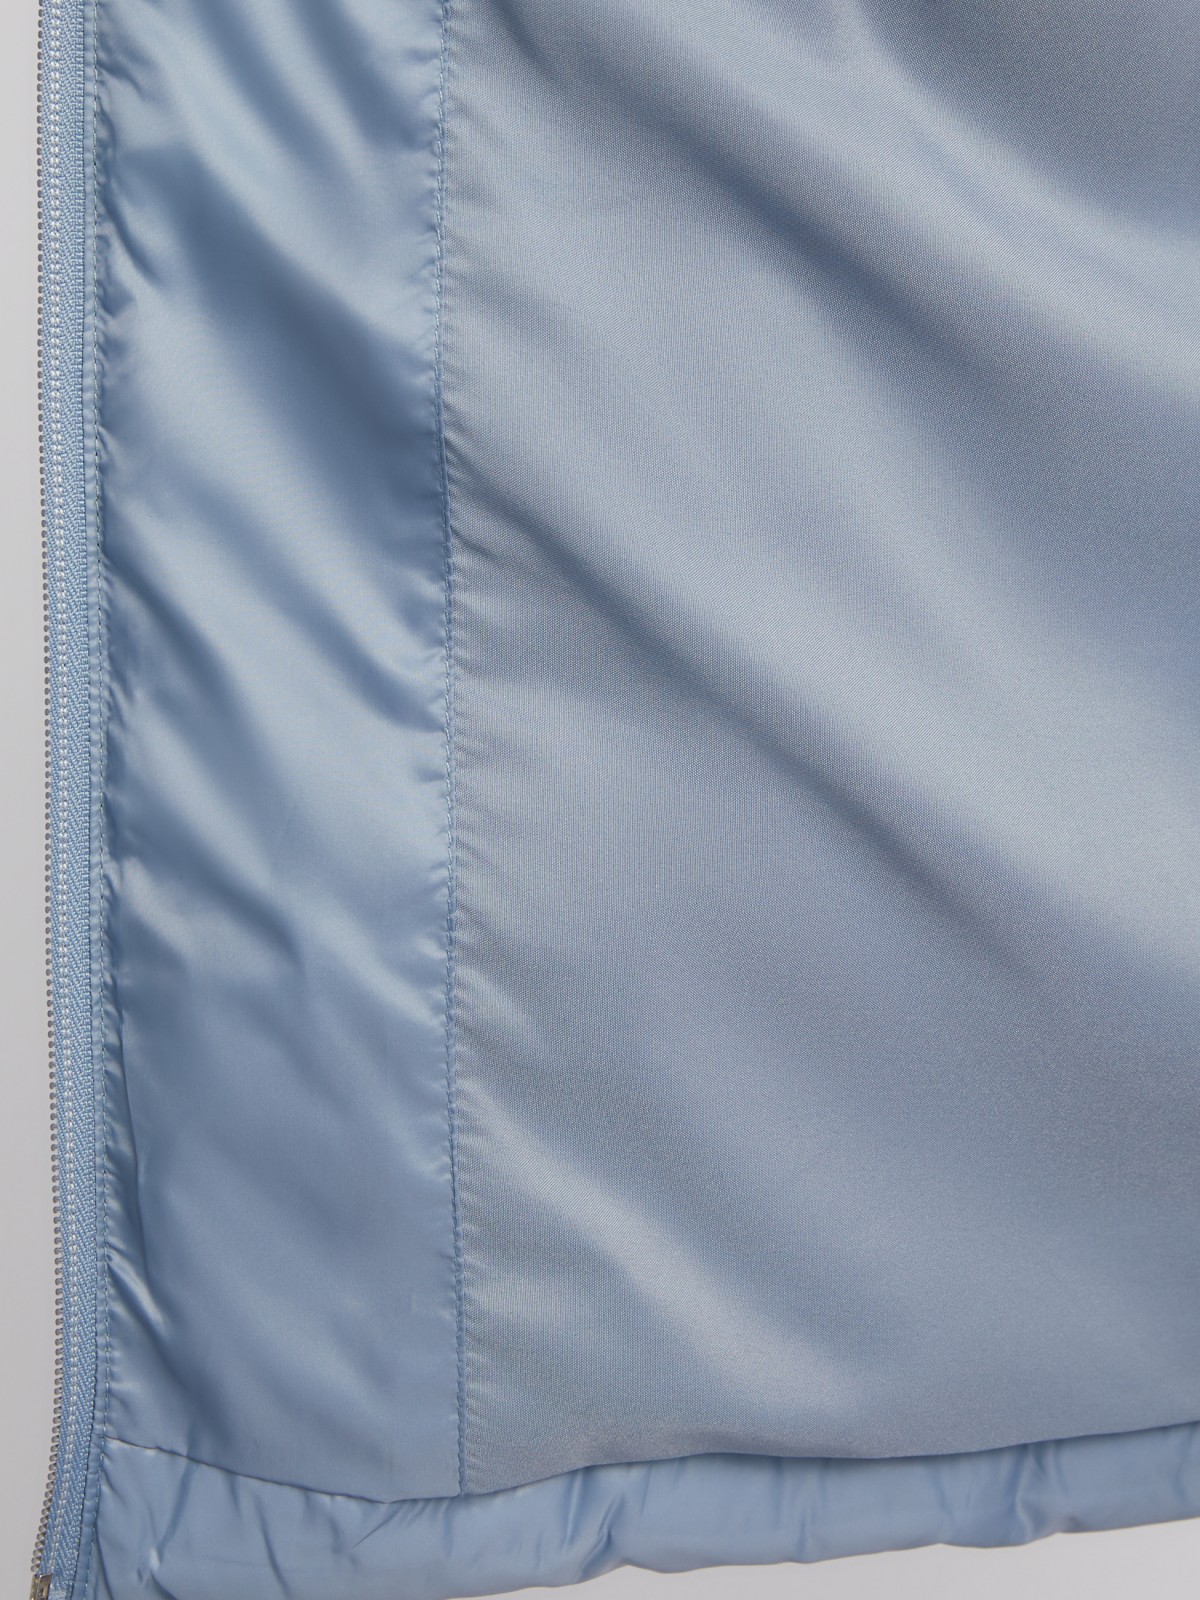 Утеплённая короткая куртка на молнии с воротником zolla 024135112154, цвет голубой, размер S - фото 5